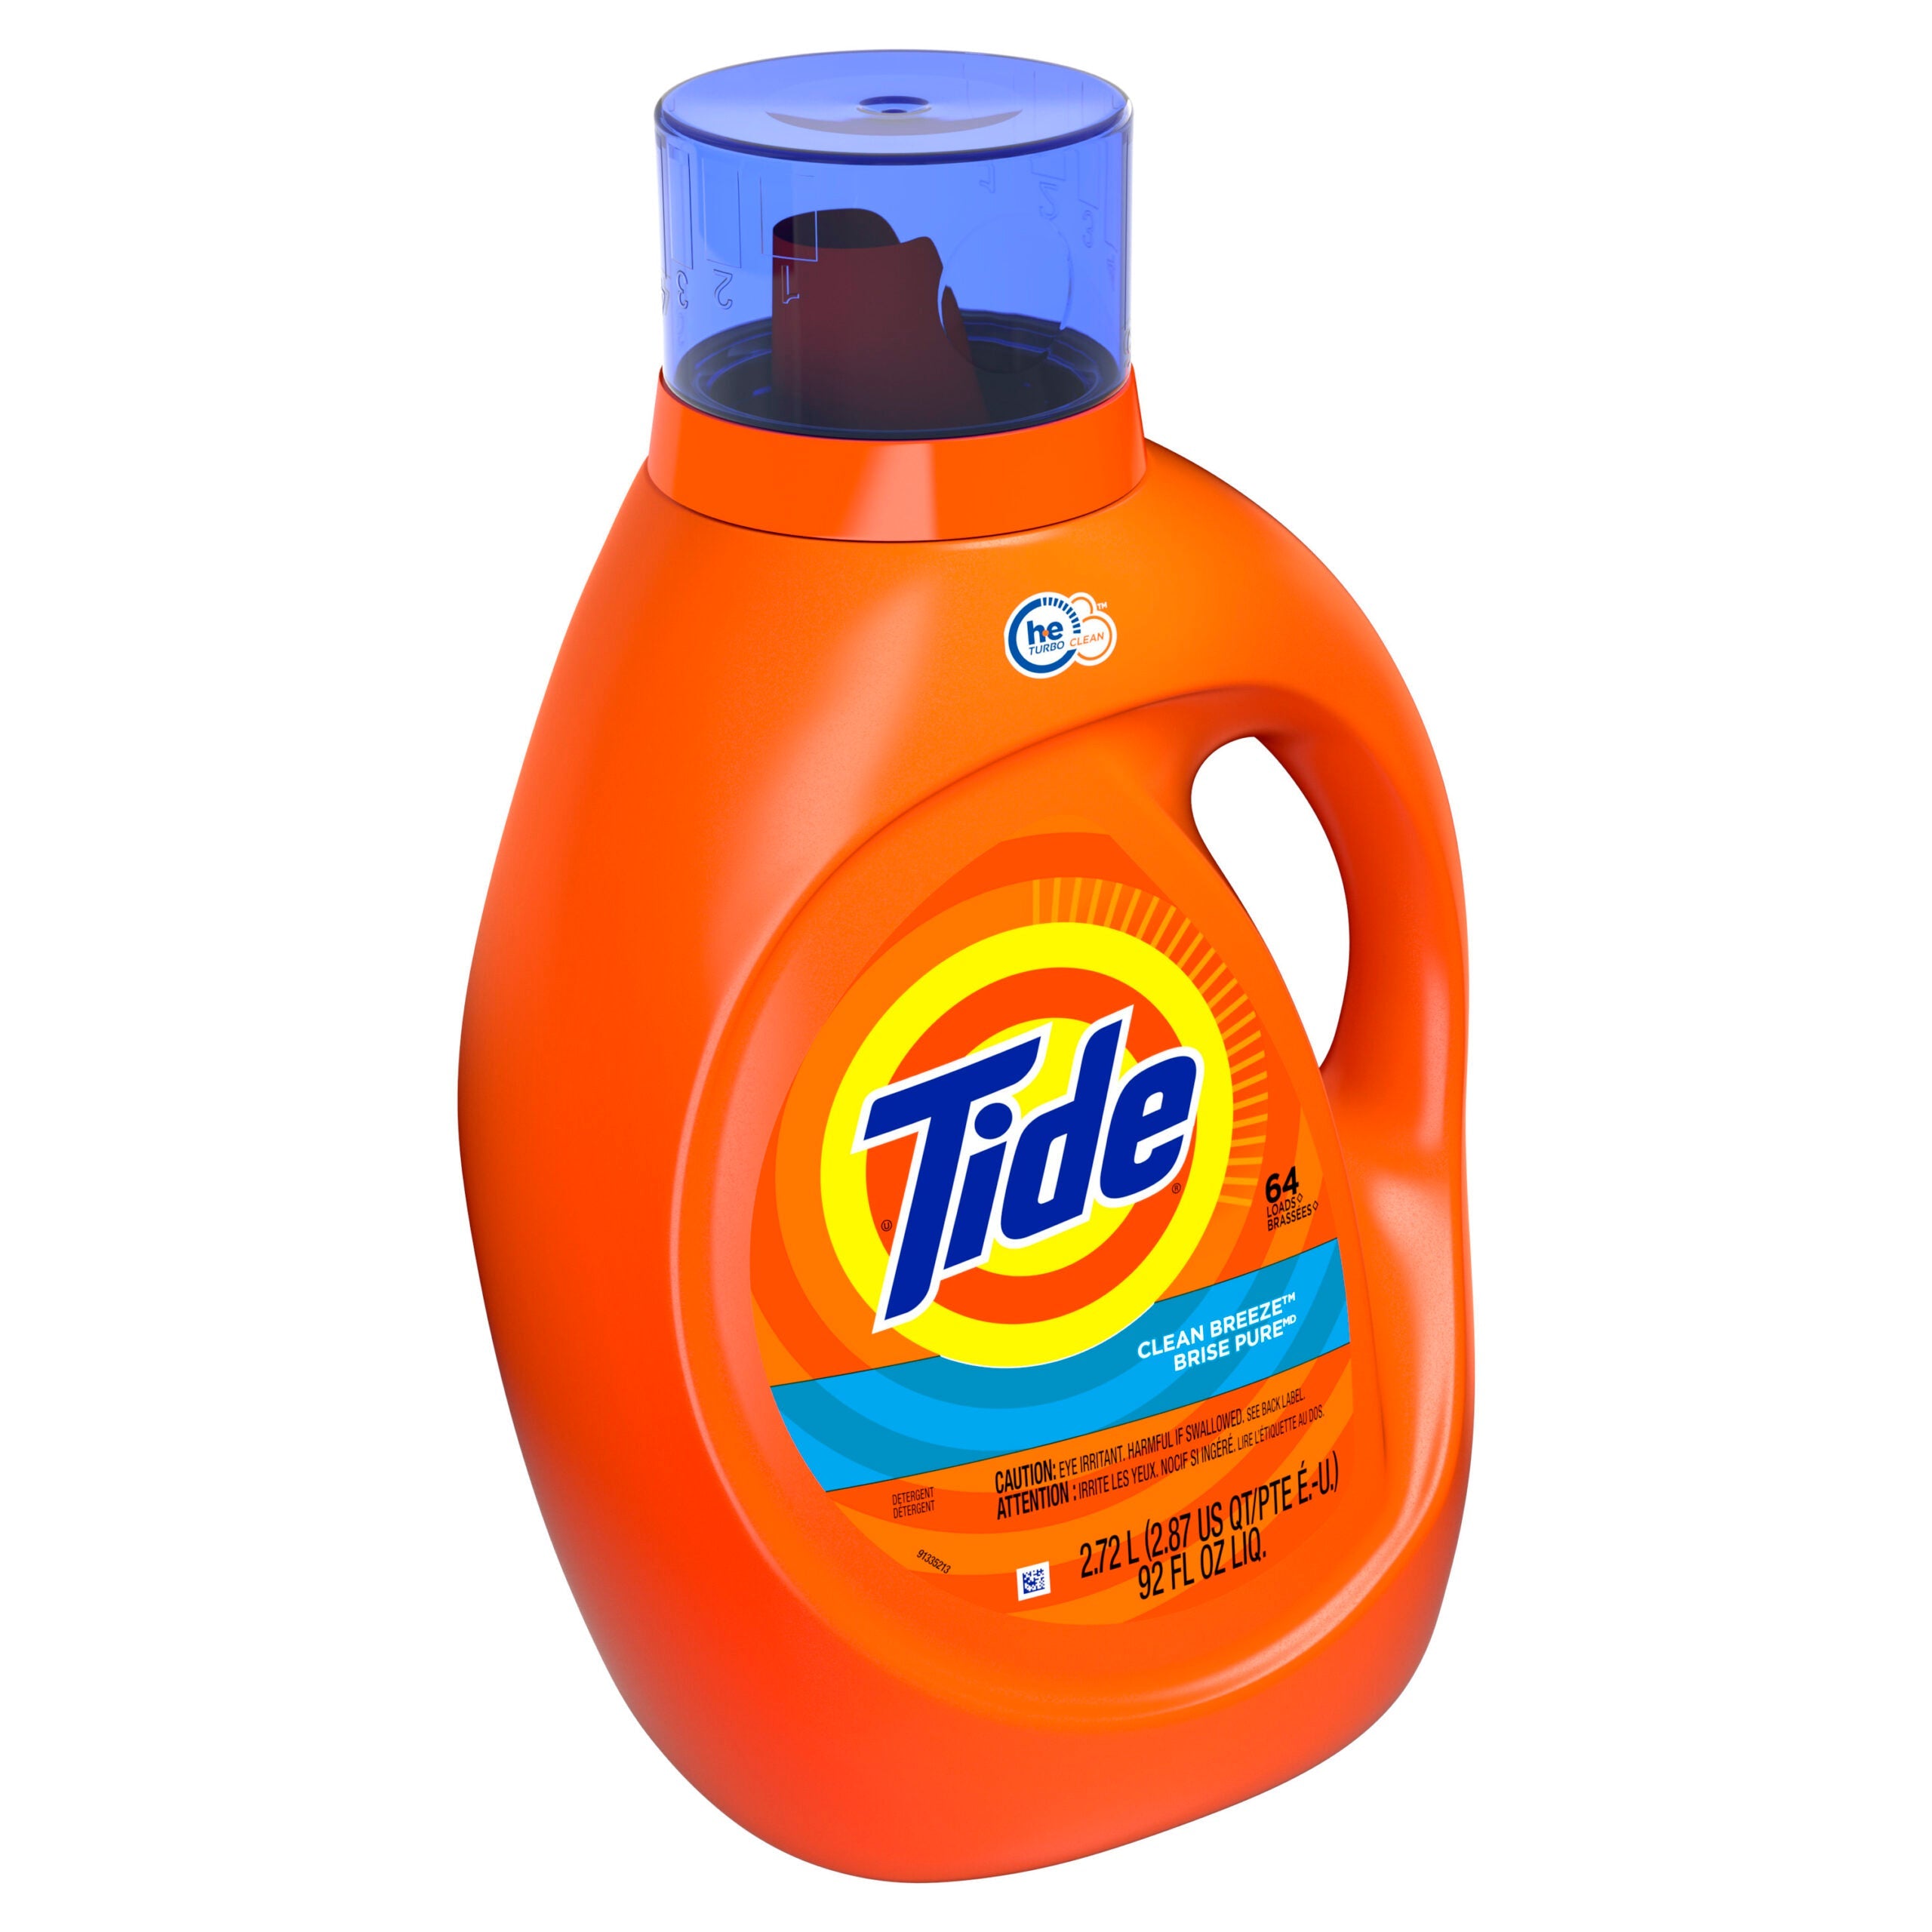 Tide Liquid Laundry Detergent Detergent Clean Breeze 64 Loads(2.72L)